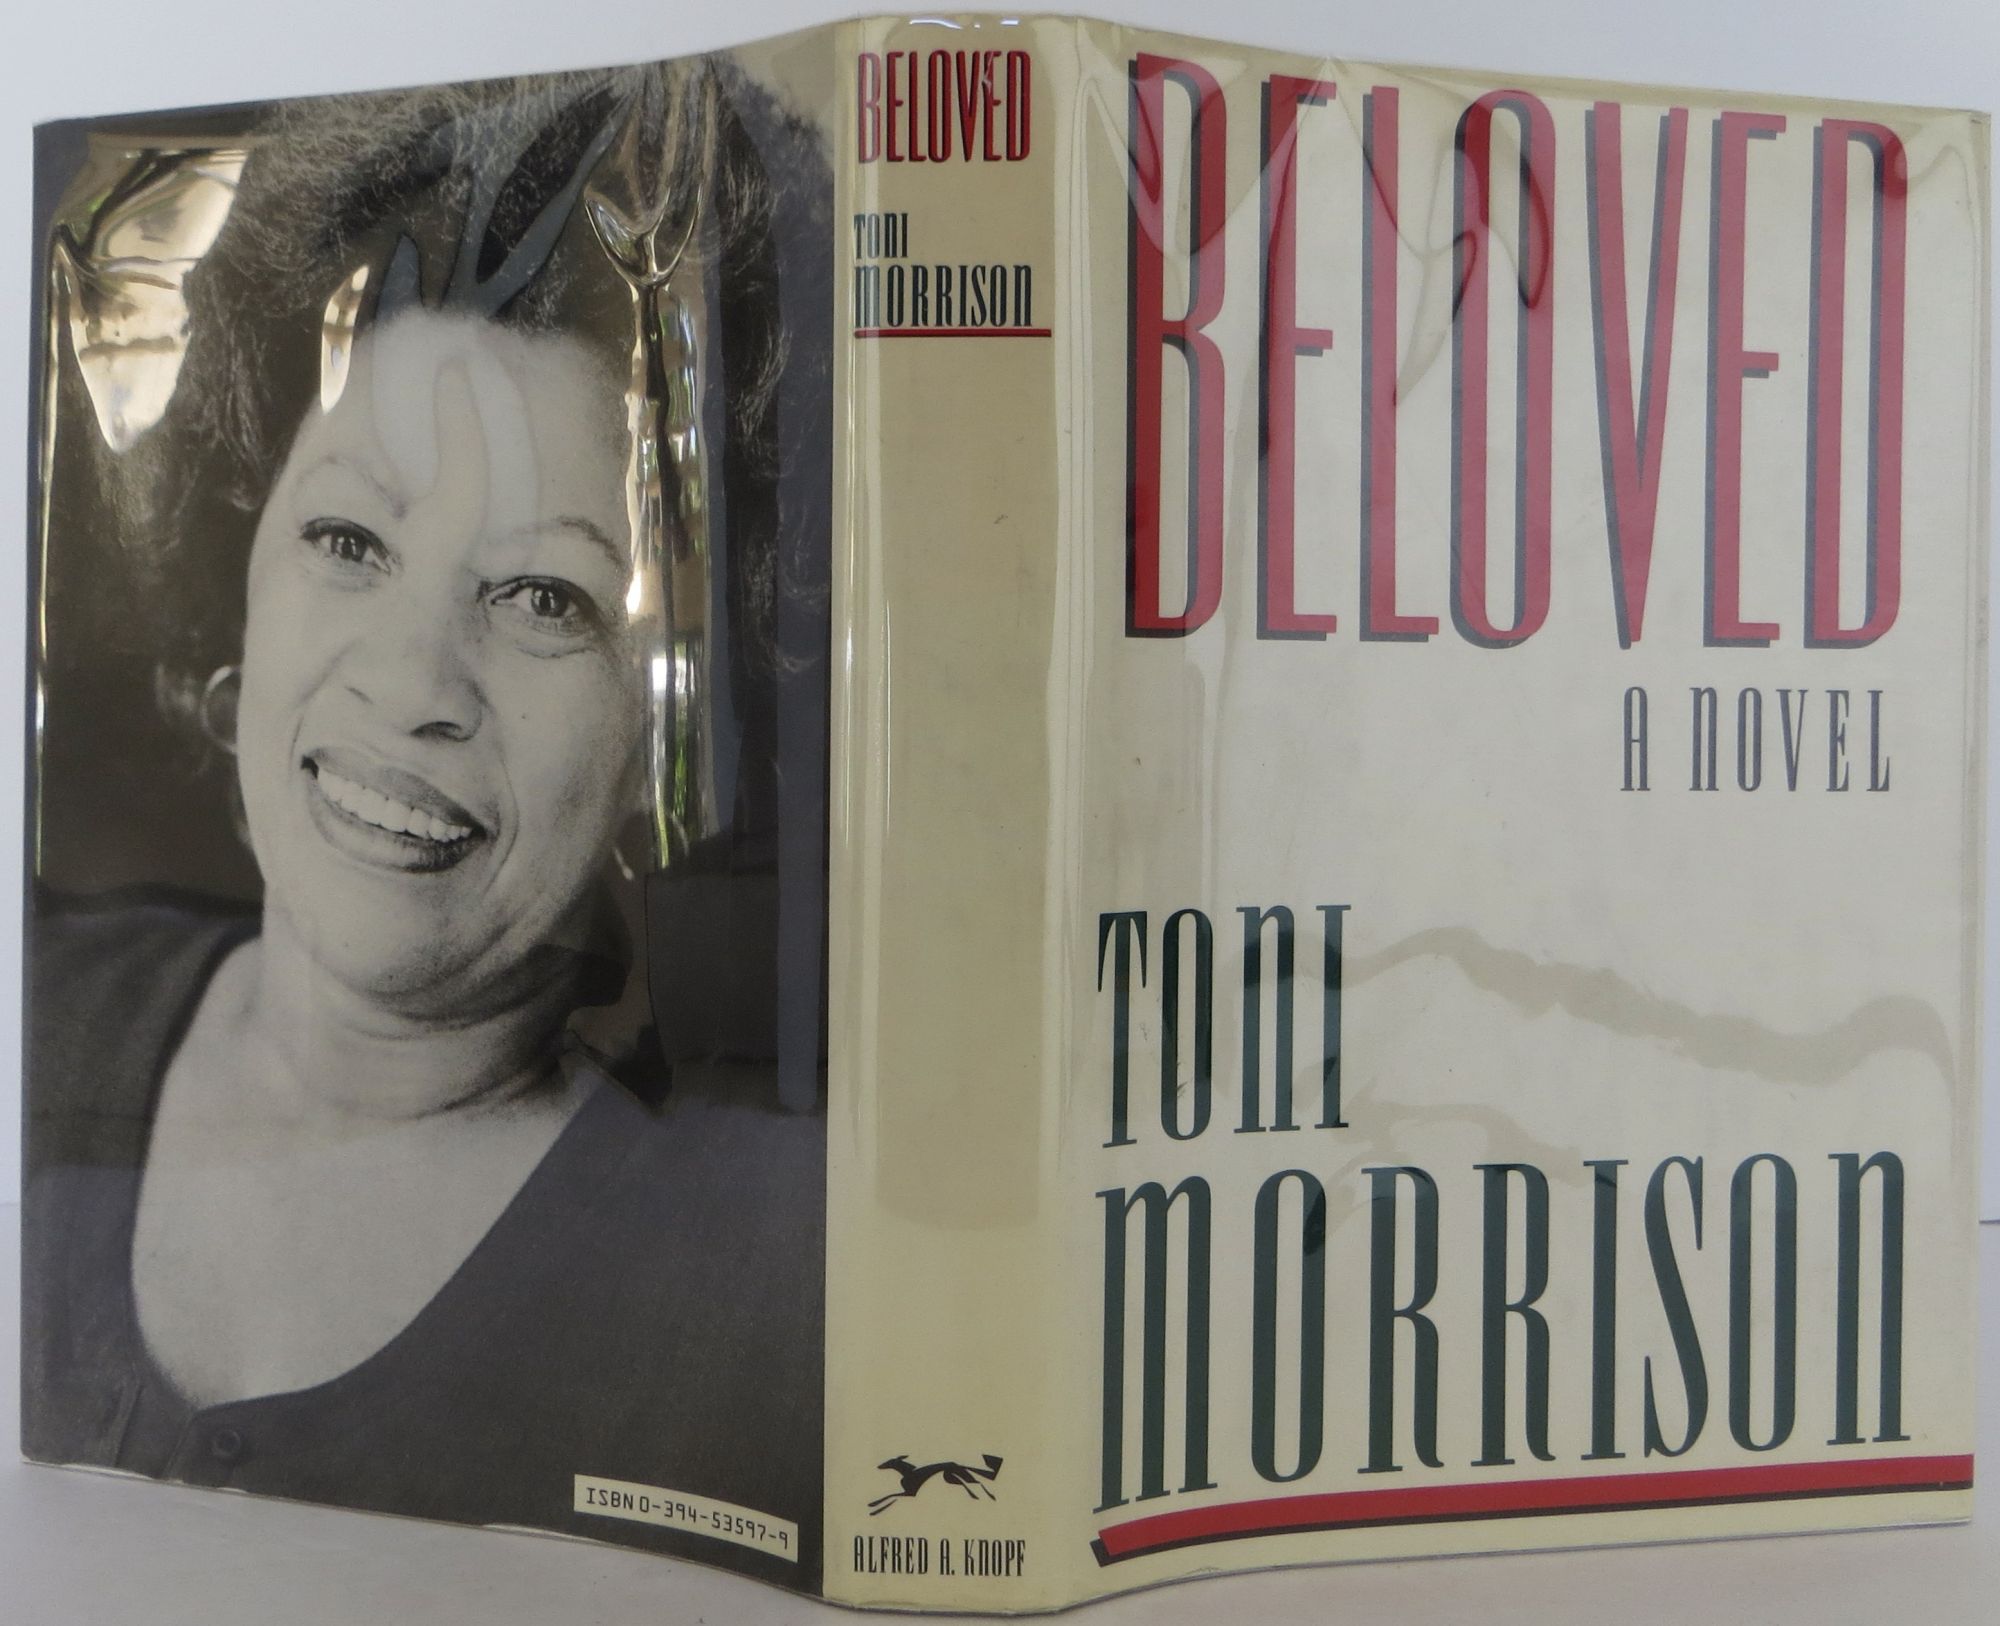 Beloved - Morrison, Toni